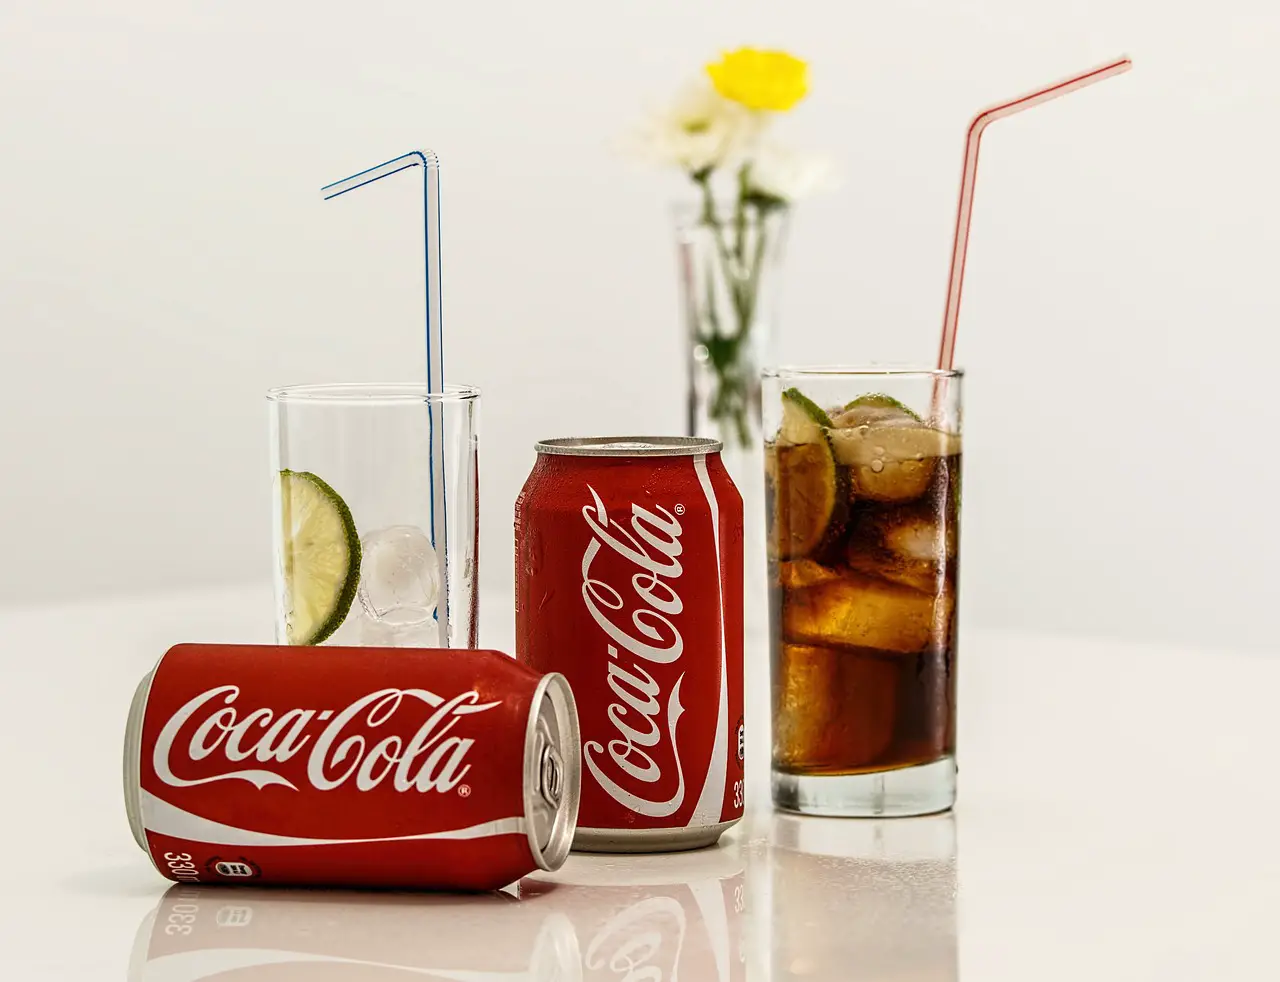 Value chain example: Coca-cola